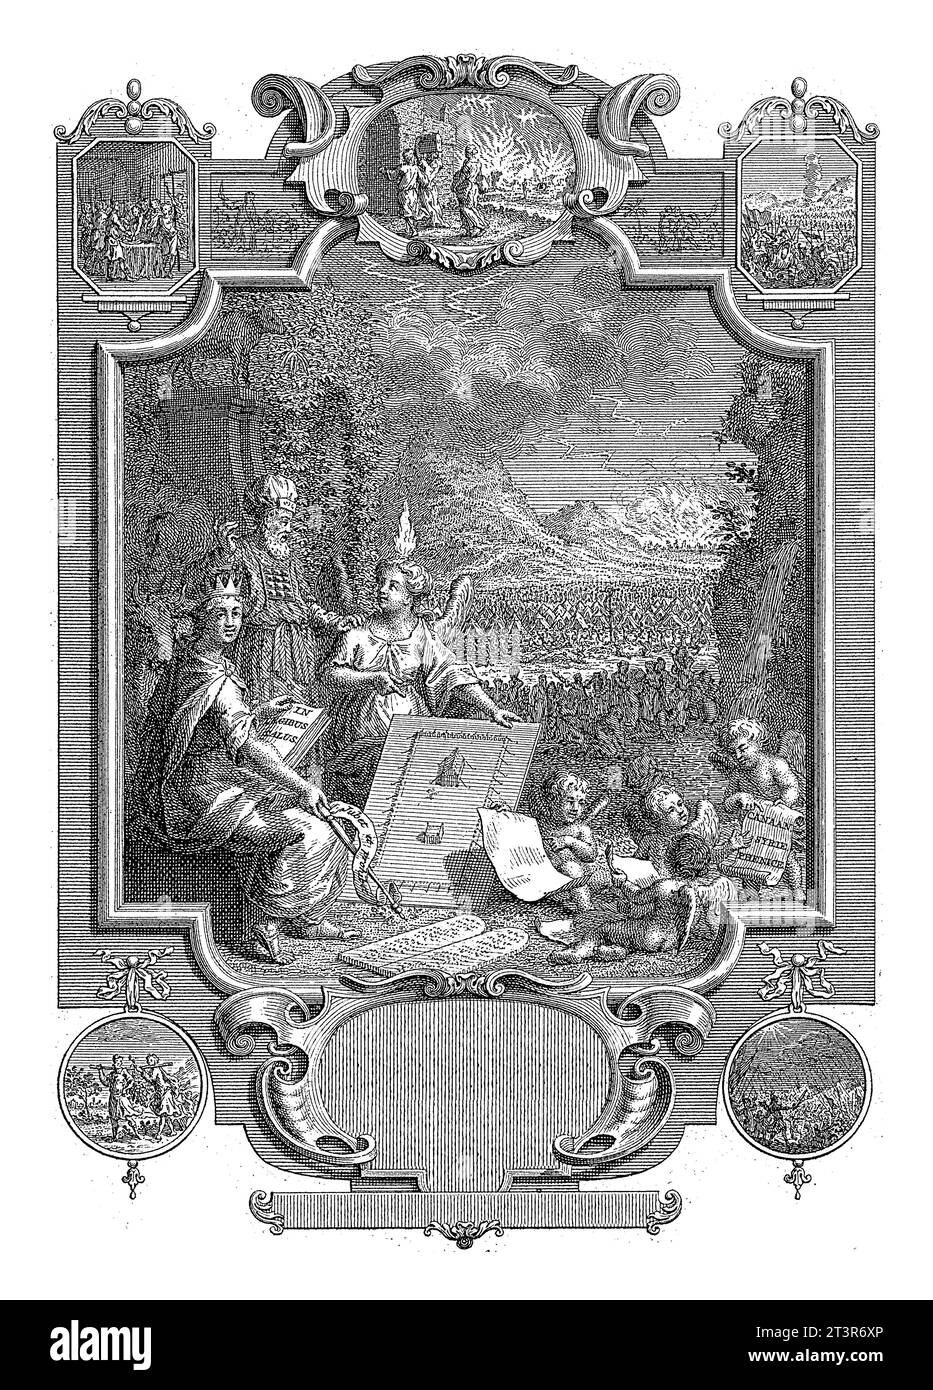 Cartiglio con allegoria sulla storia di Israele, Jan Caspar Philips, 1737 Un sommo sacerdote ebreo in conversazione con un angelo, con una fiamma accesa Foto Stock